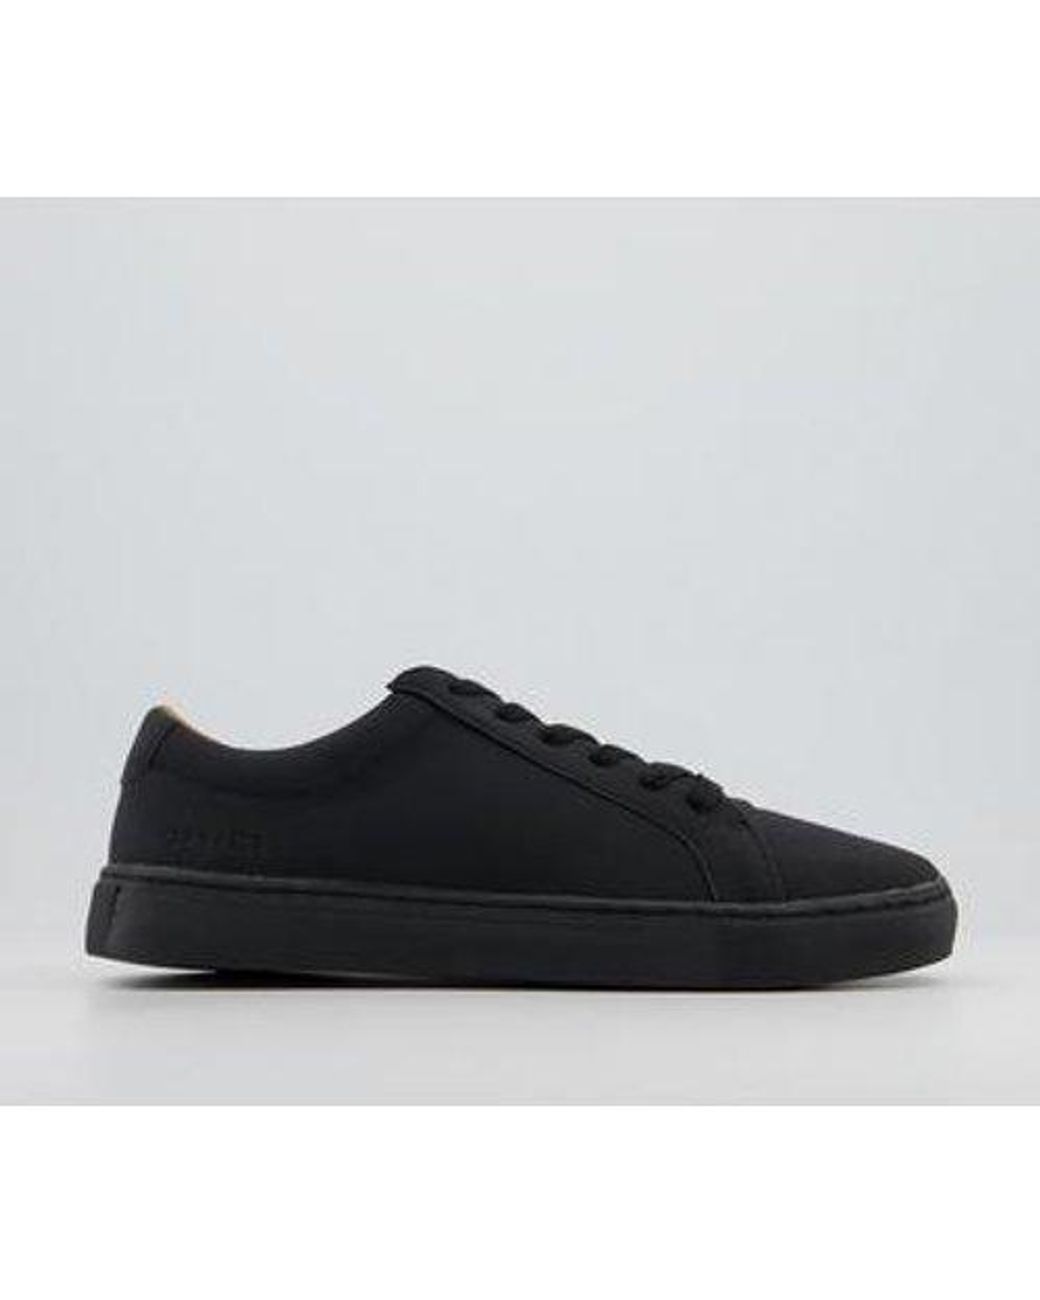 Office Carlton Sneakers in Black for Men - Lyst